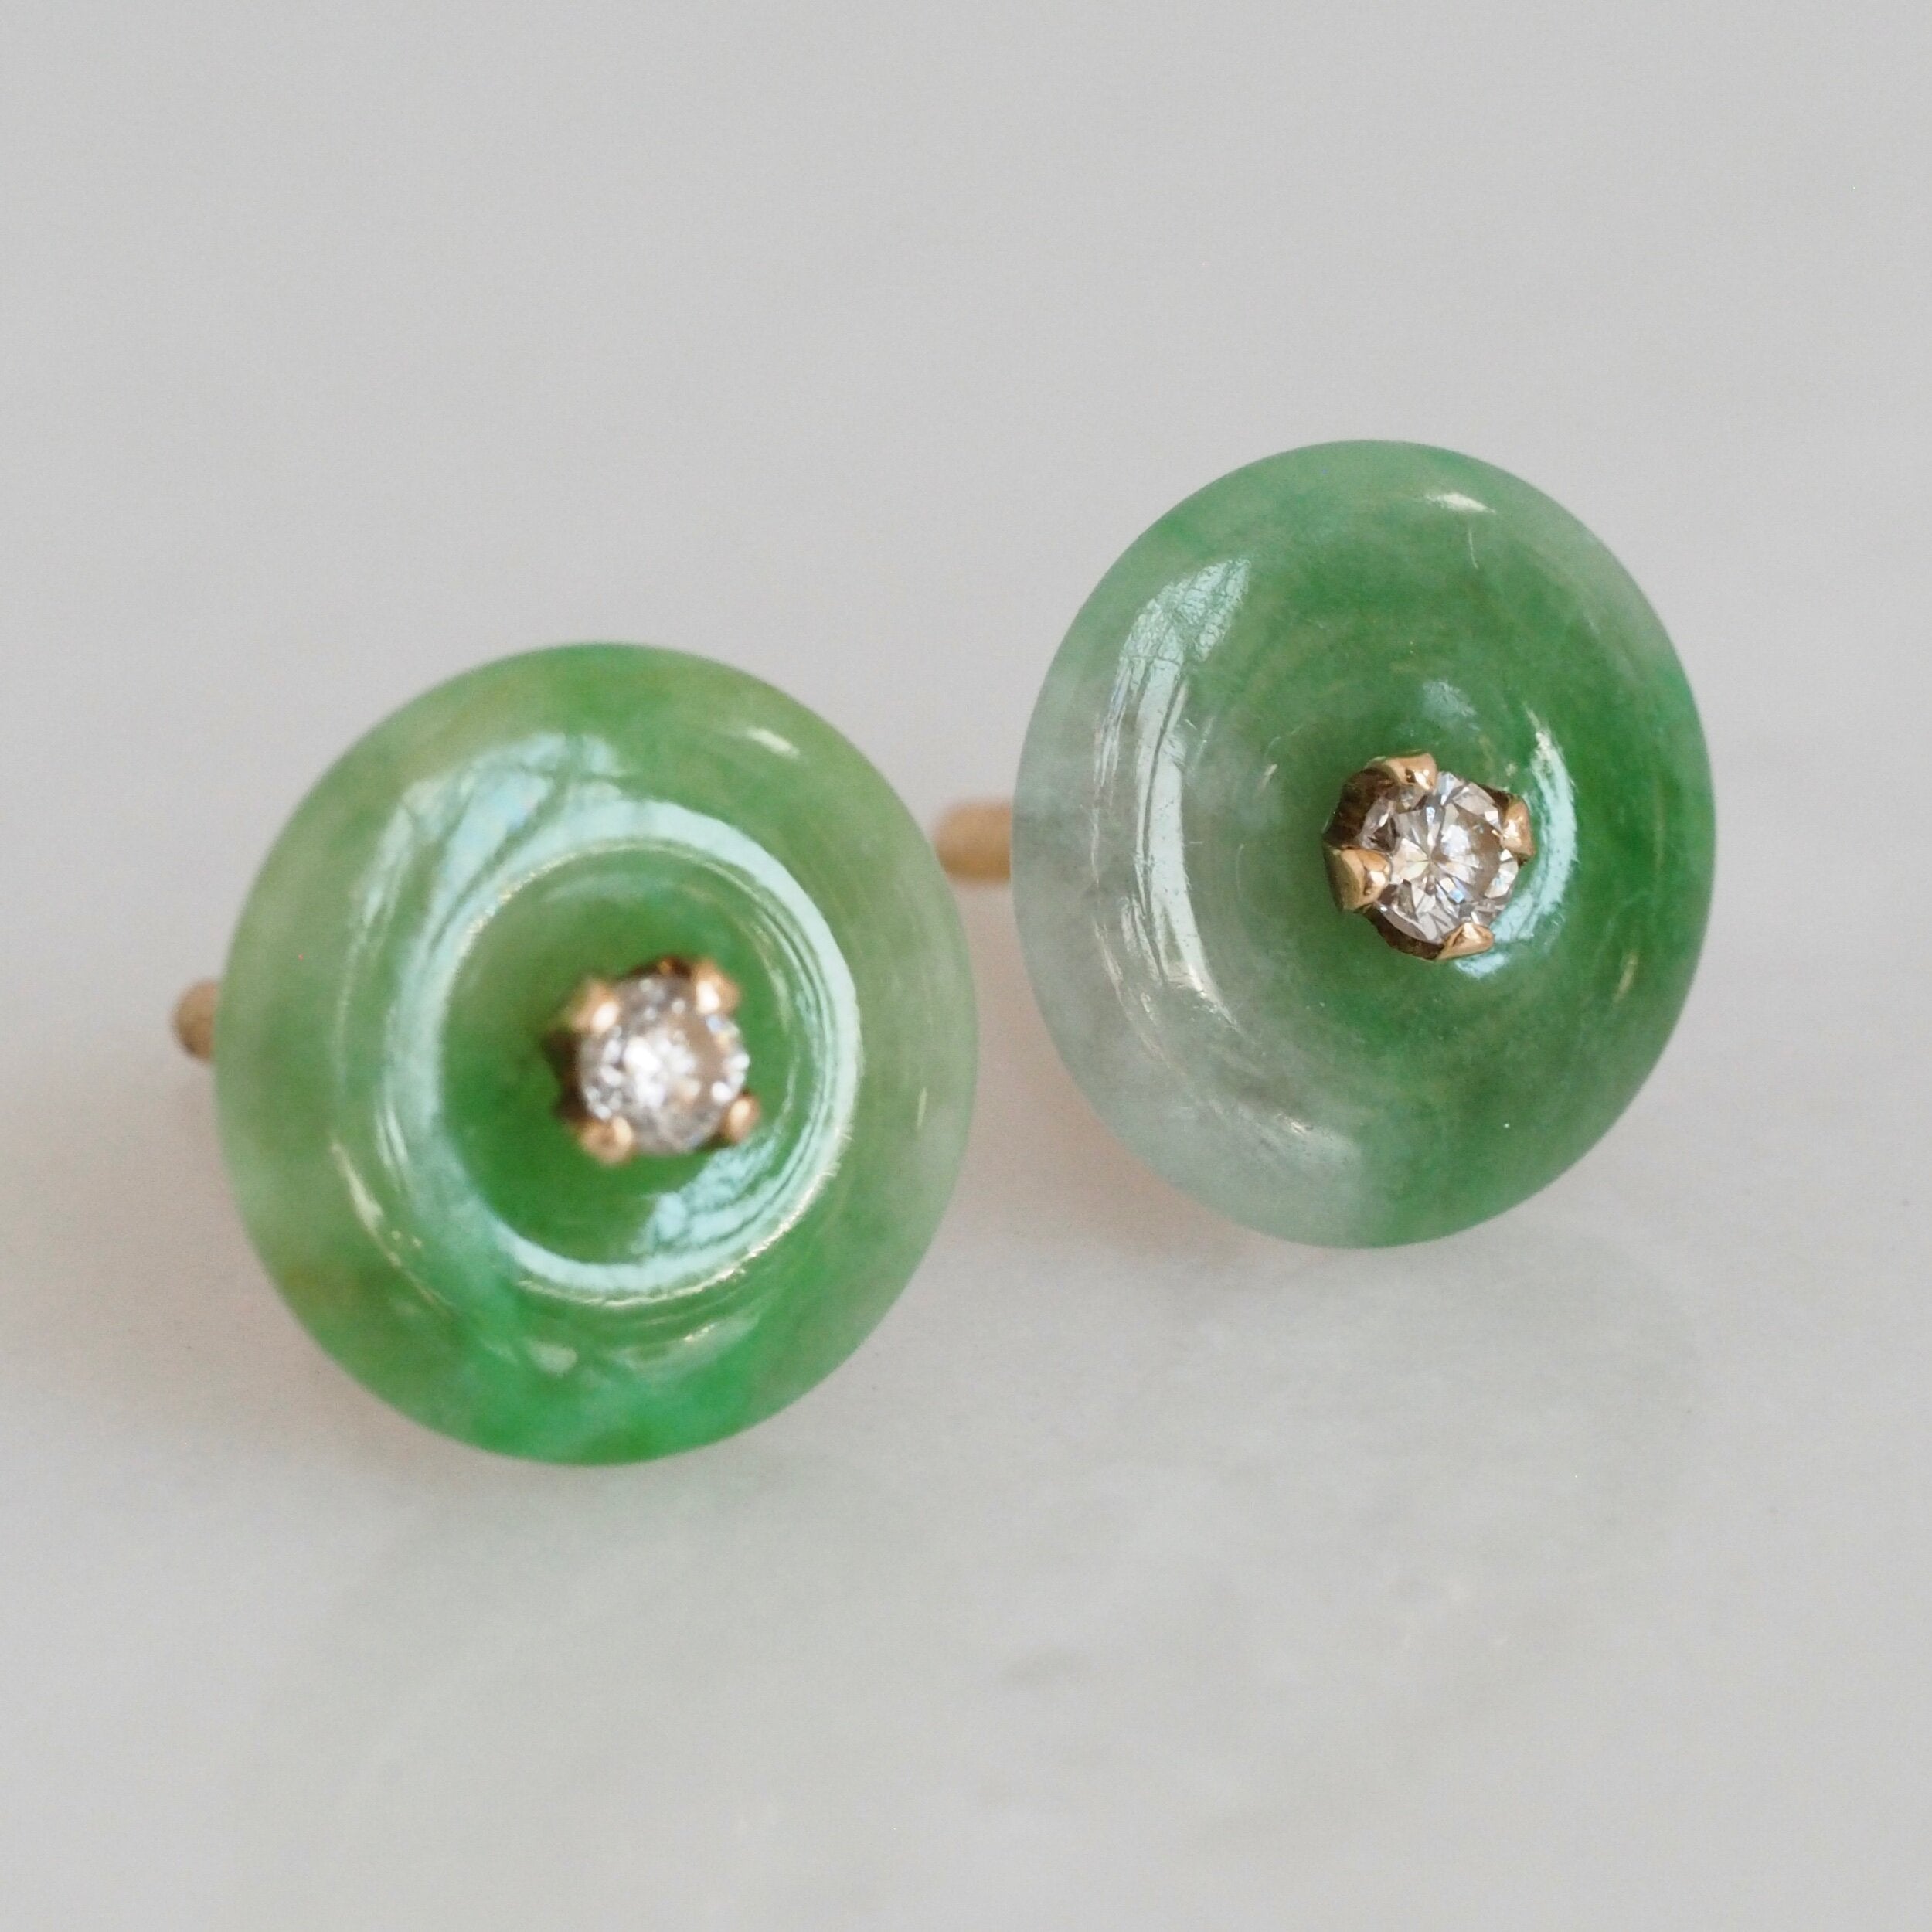 Vintage 18k Gold Jade and Diamond Earrings